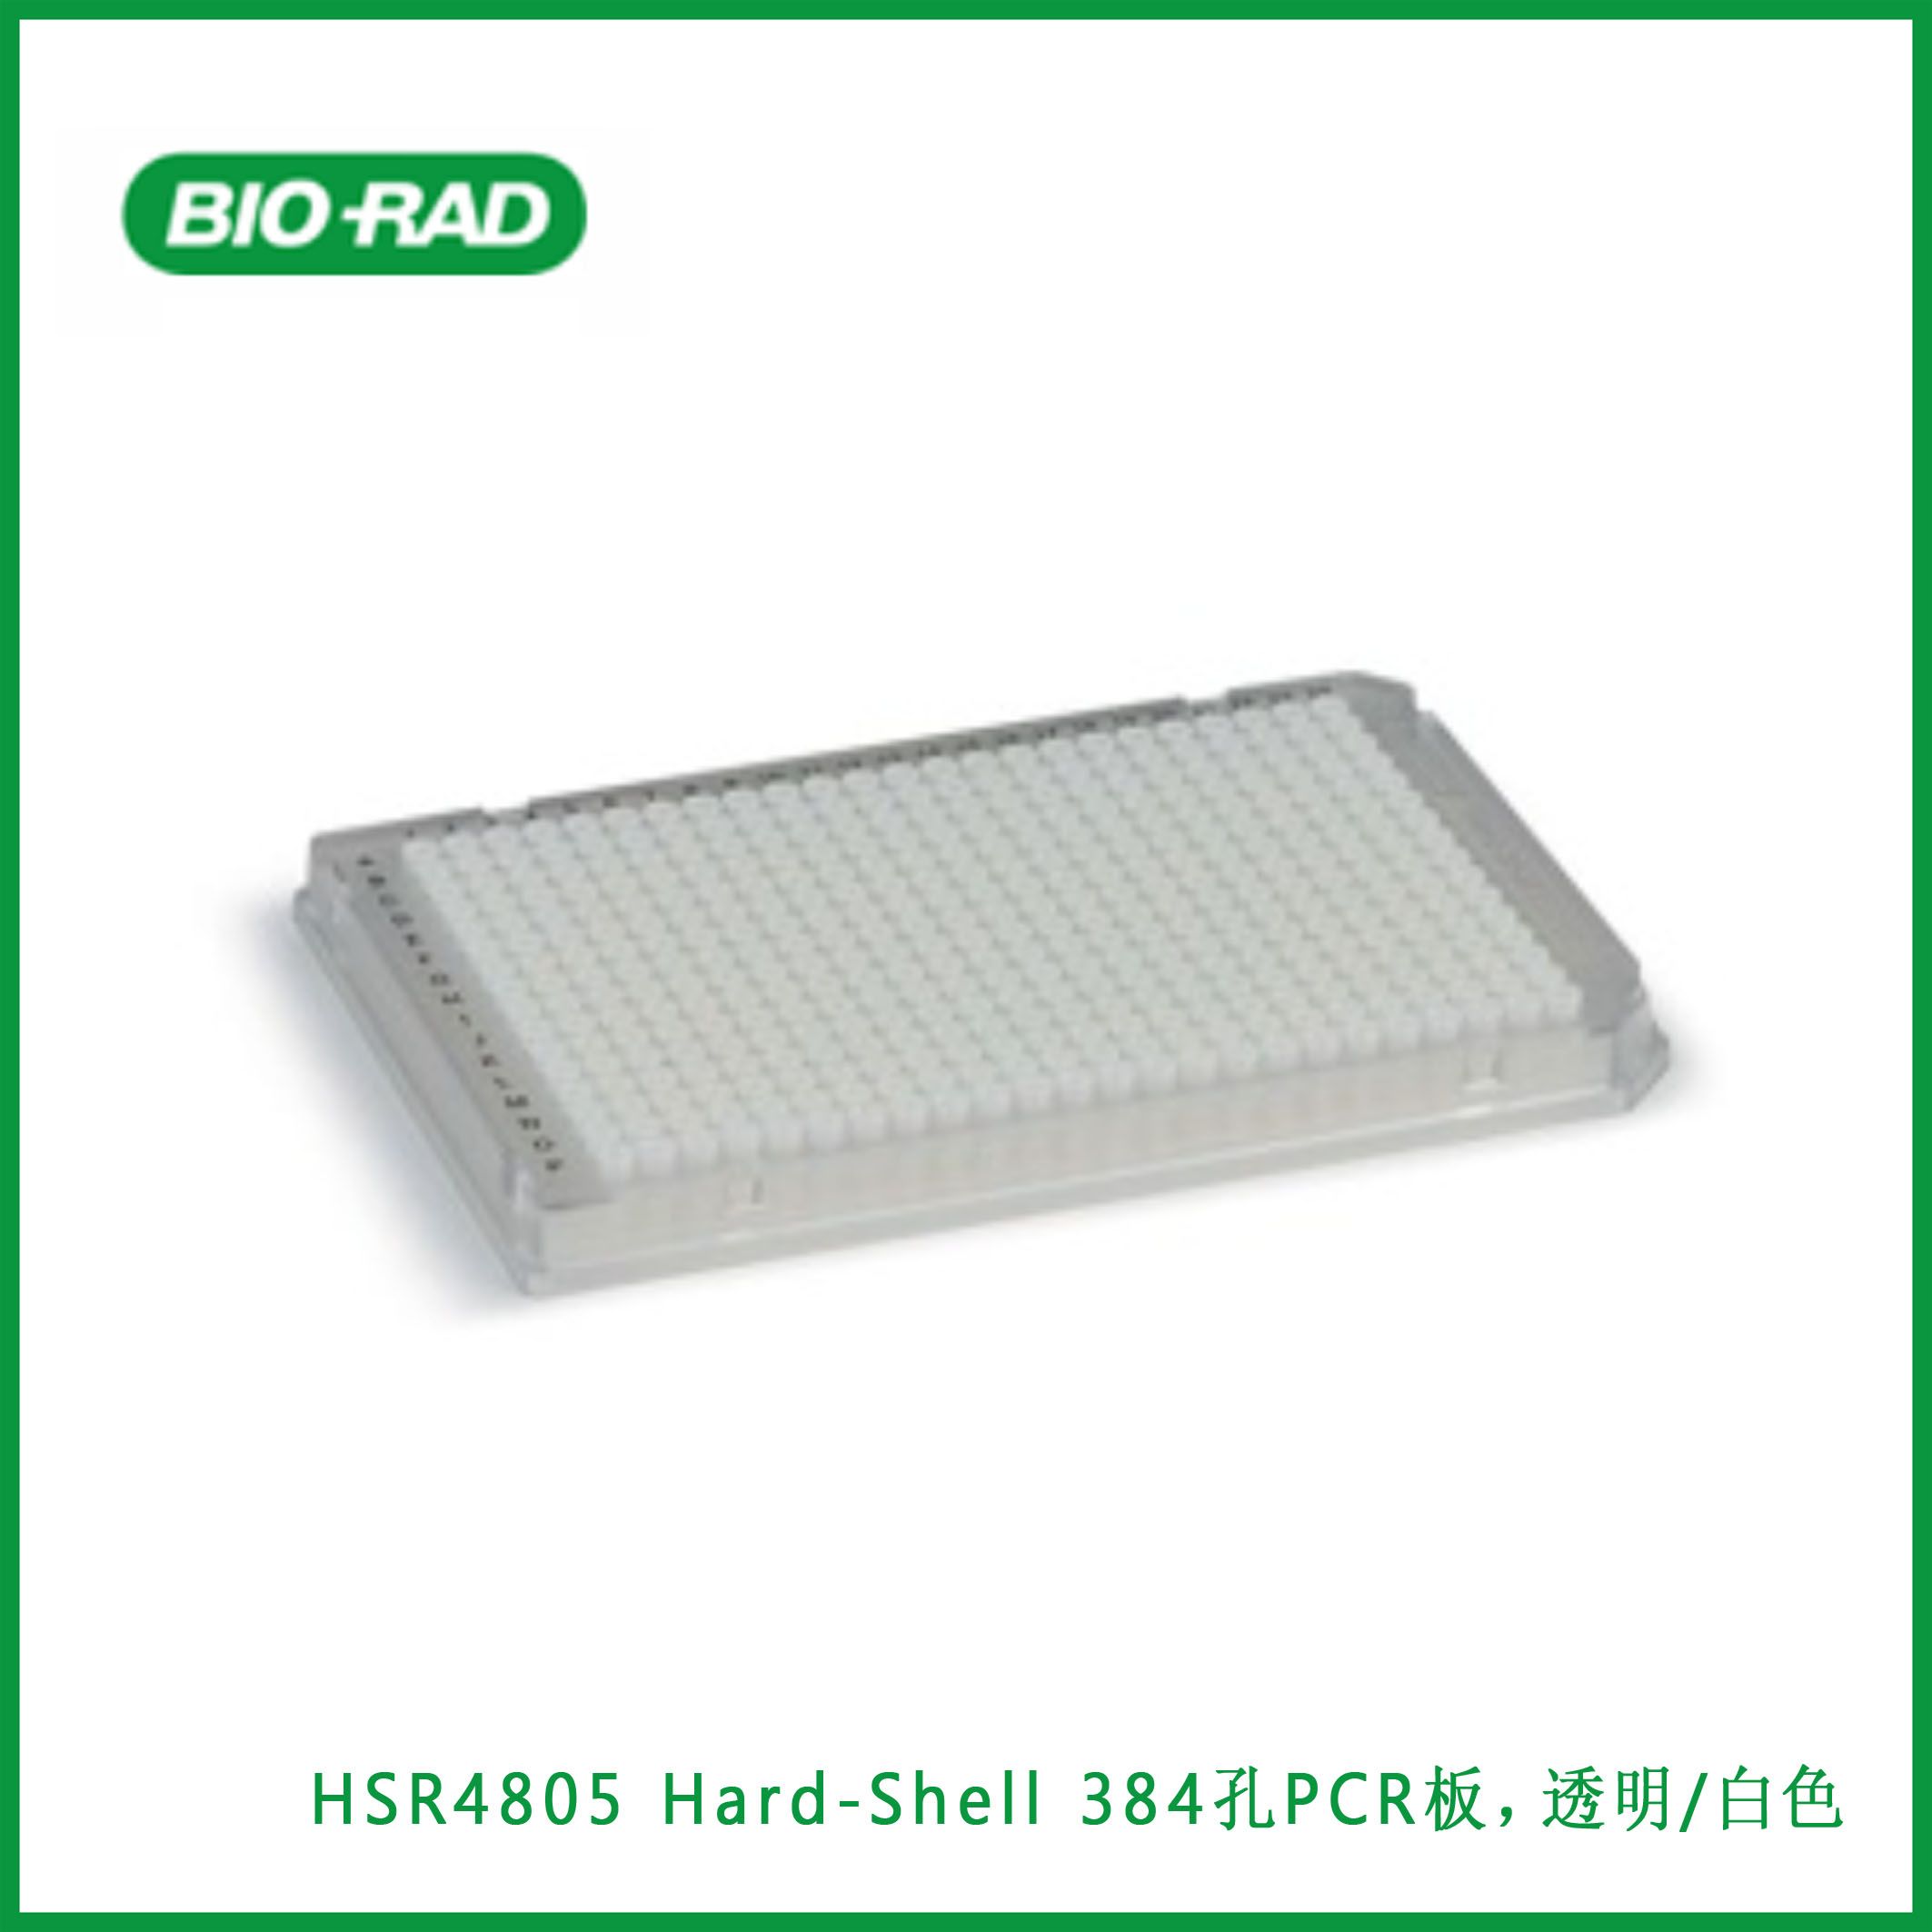 伯乐Bio-RadHSR4805 Hard-Shell® 384-Well PCR Plates, clear/white, barcoded, Hard-Shell®  384孔PCR板，透明/白色，条形码，现货